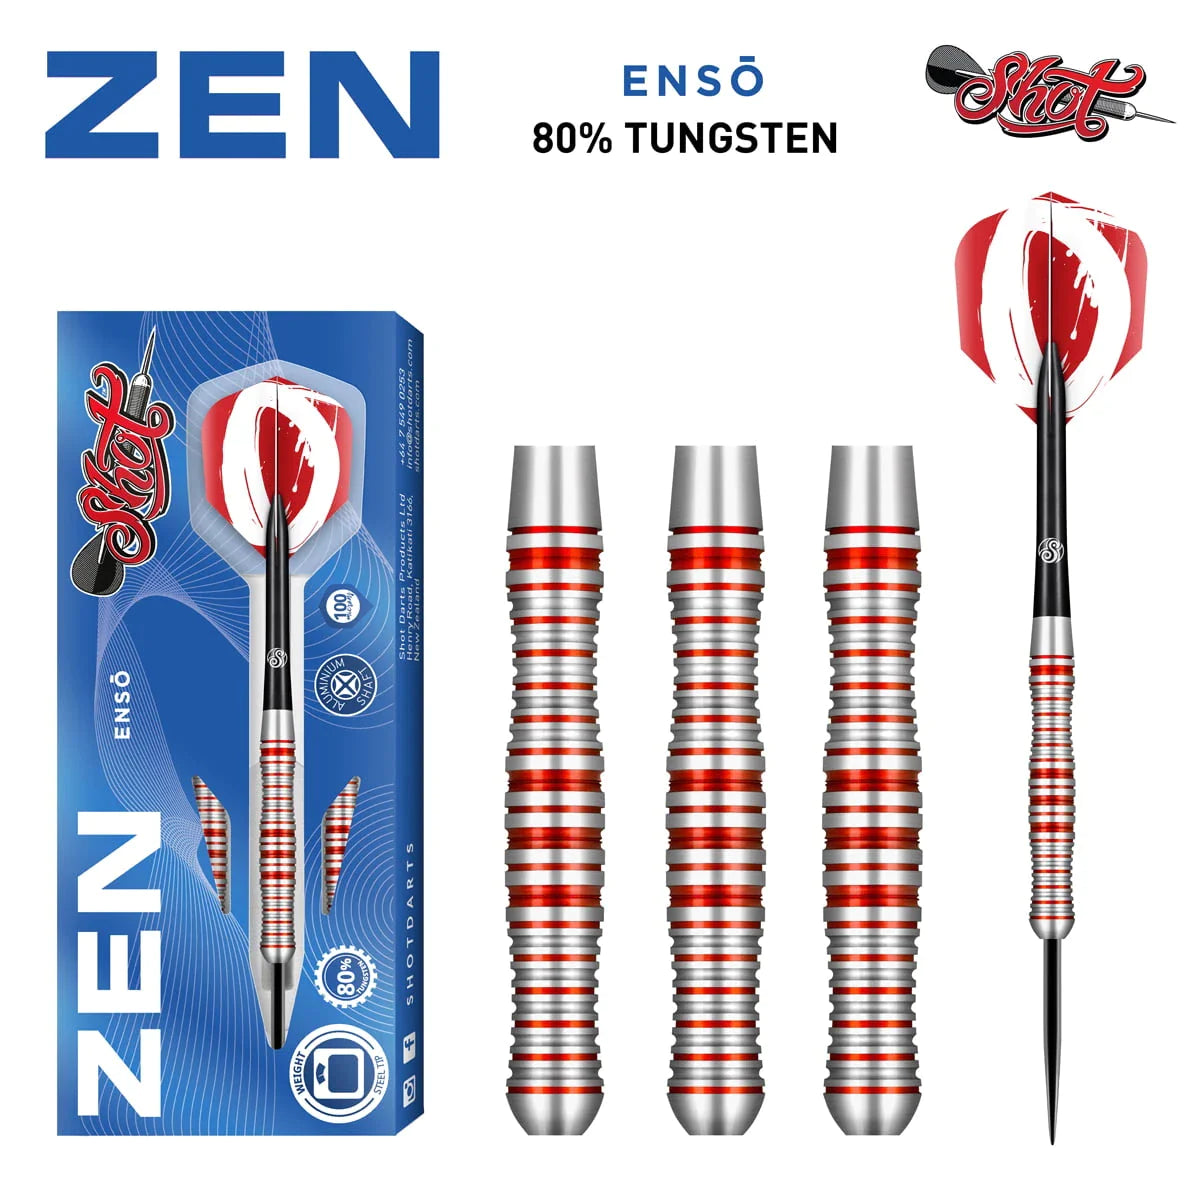 Shot Zen Enso 24g 80% Tungsten Steel Tip Darts